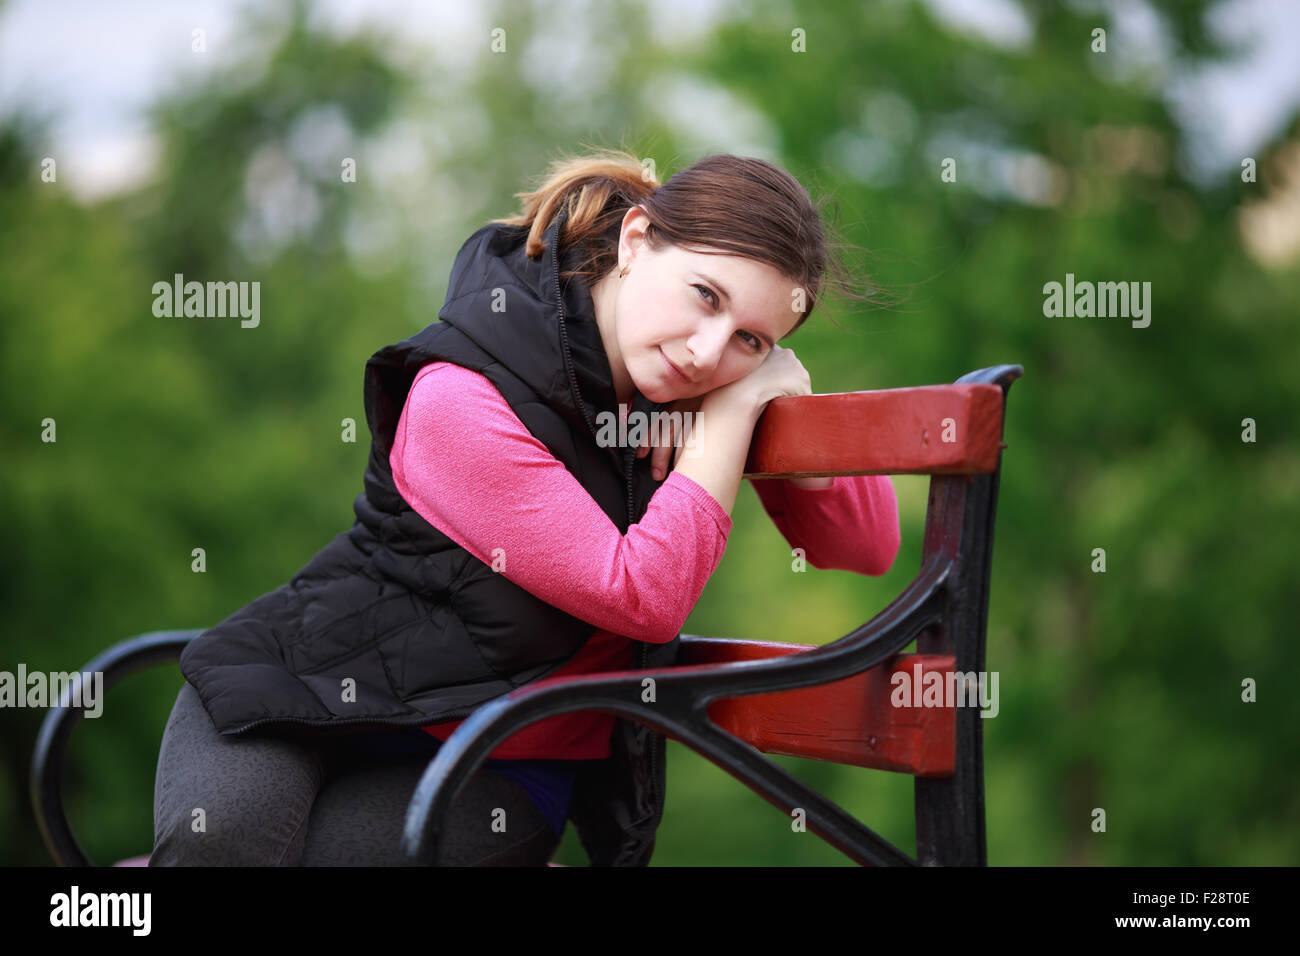 Hübsche junge Frau sitzt auf einer Parkbank. Ein Mädchen in einer entspannten Haltung ruht und in die Kamera schaut. Selektiven Fokus auf th Stockfoto